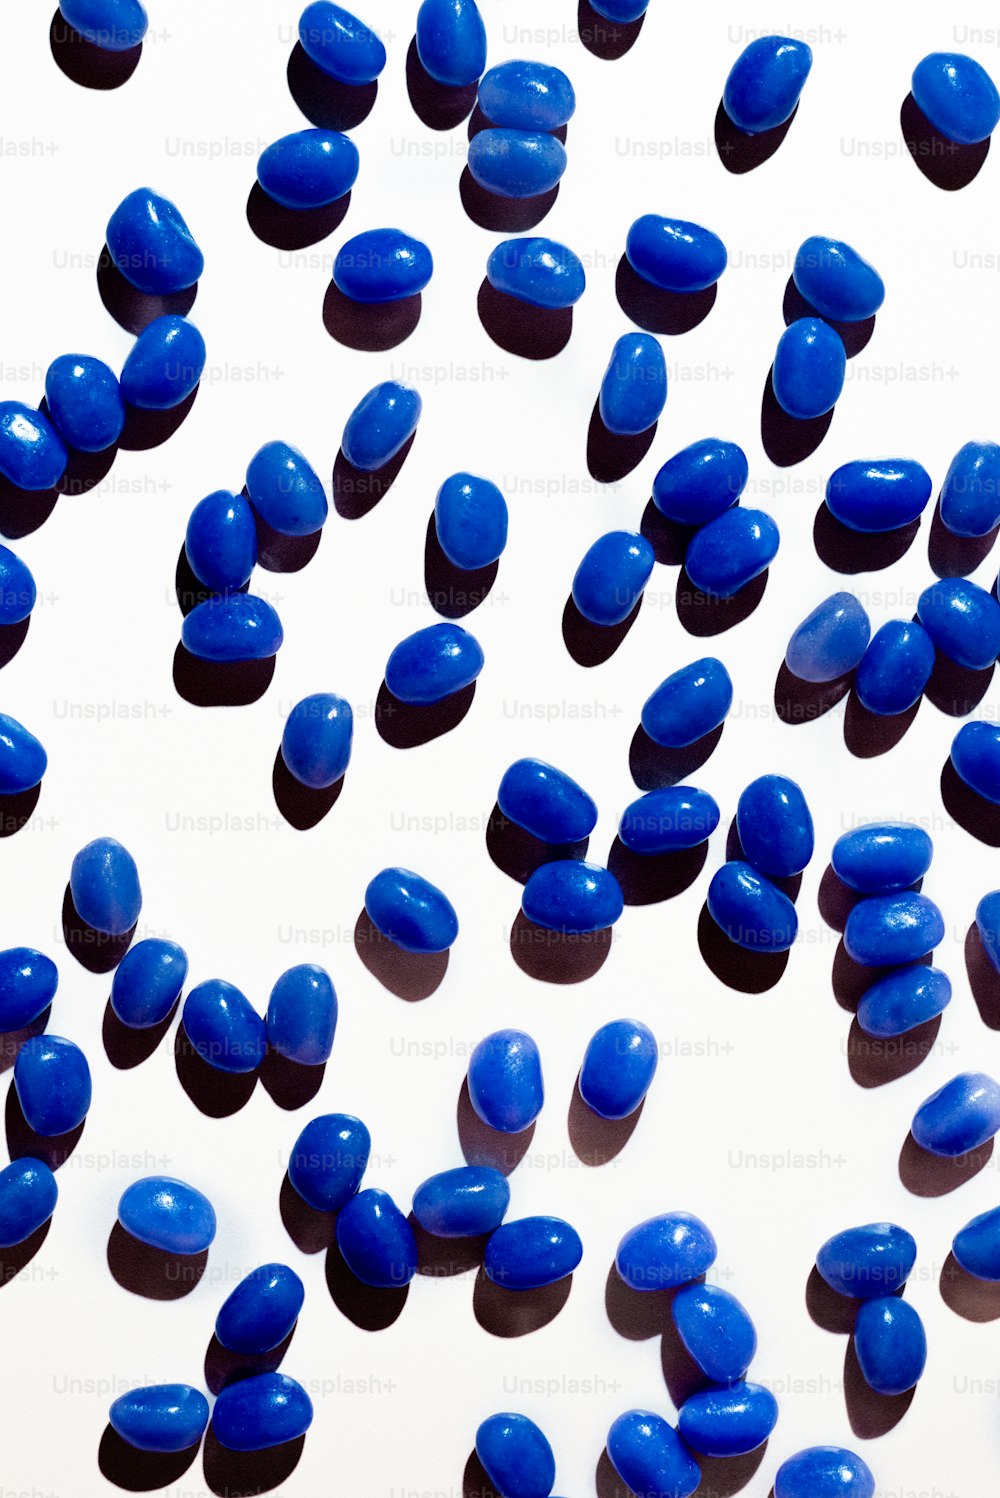 Muchas píldoras azules están dispersas sobre una superficie blanca